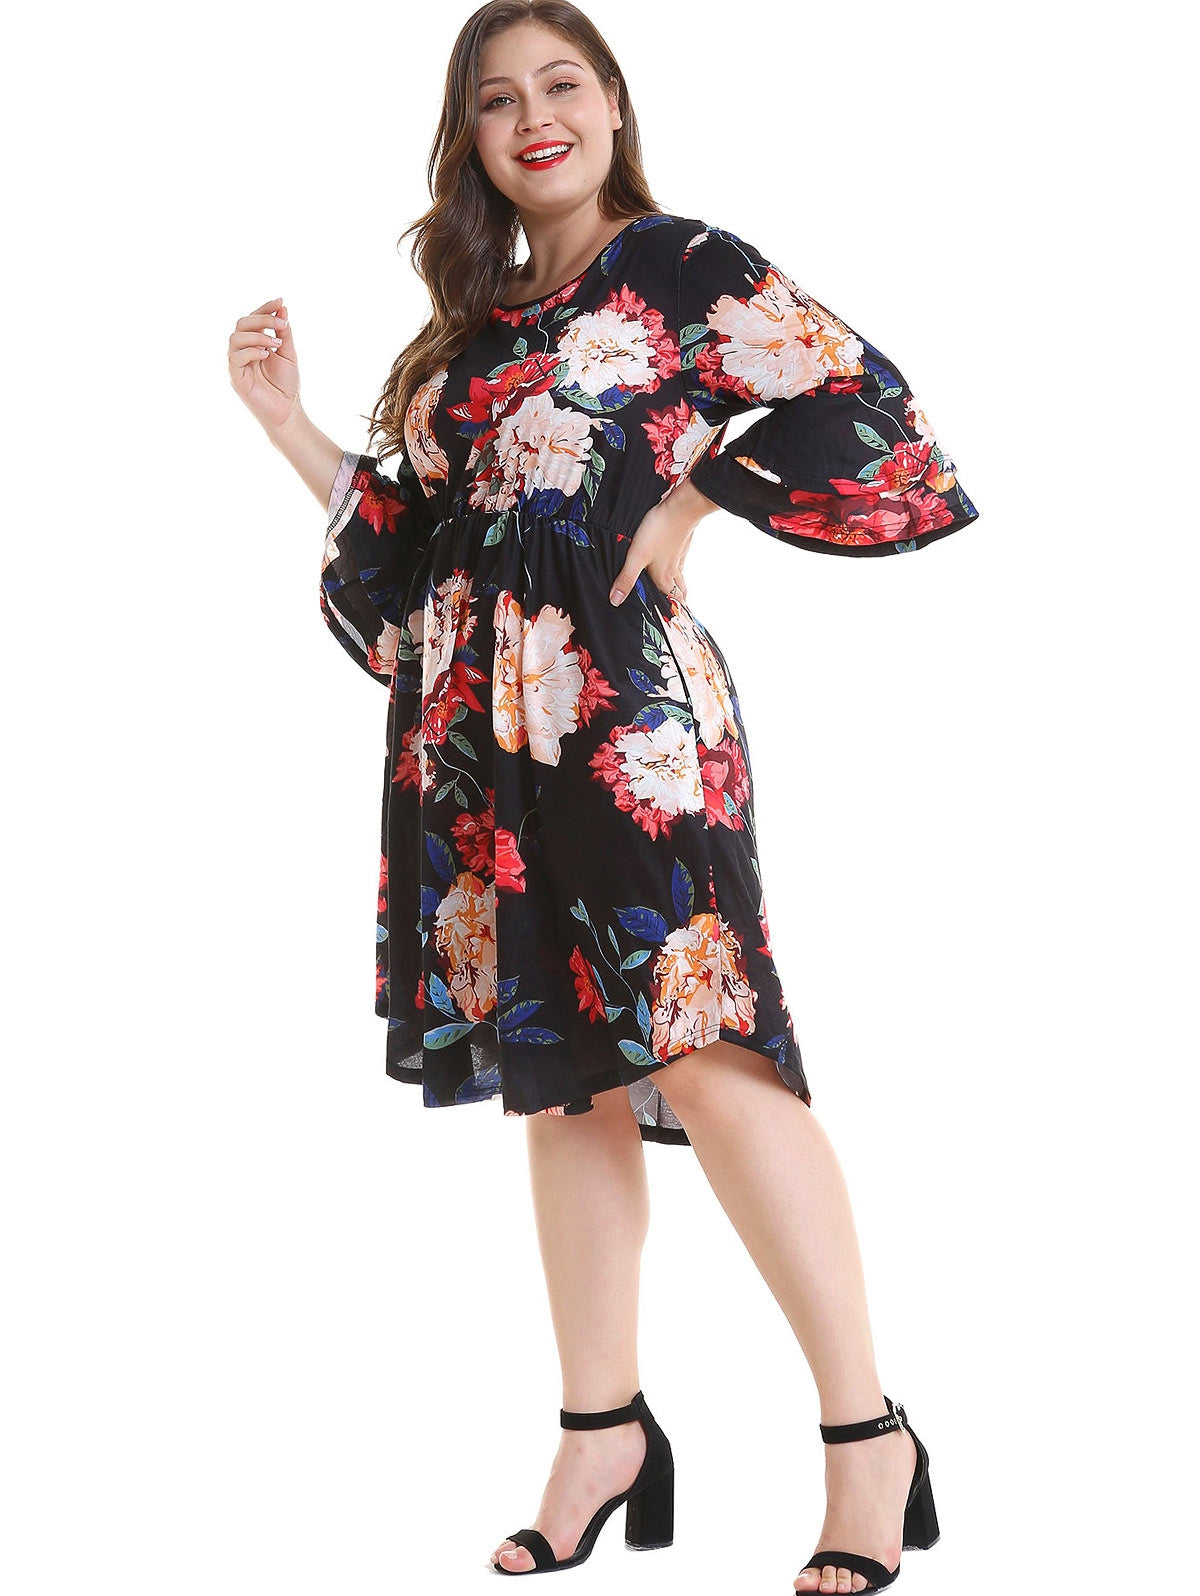 Plus Size Floral Print Dress for Women - DromedarShop.com Online Boutique